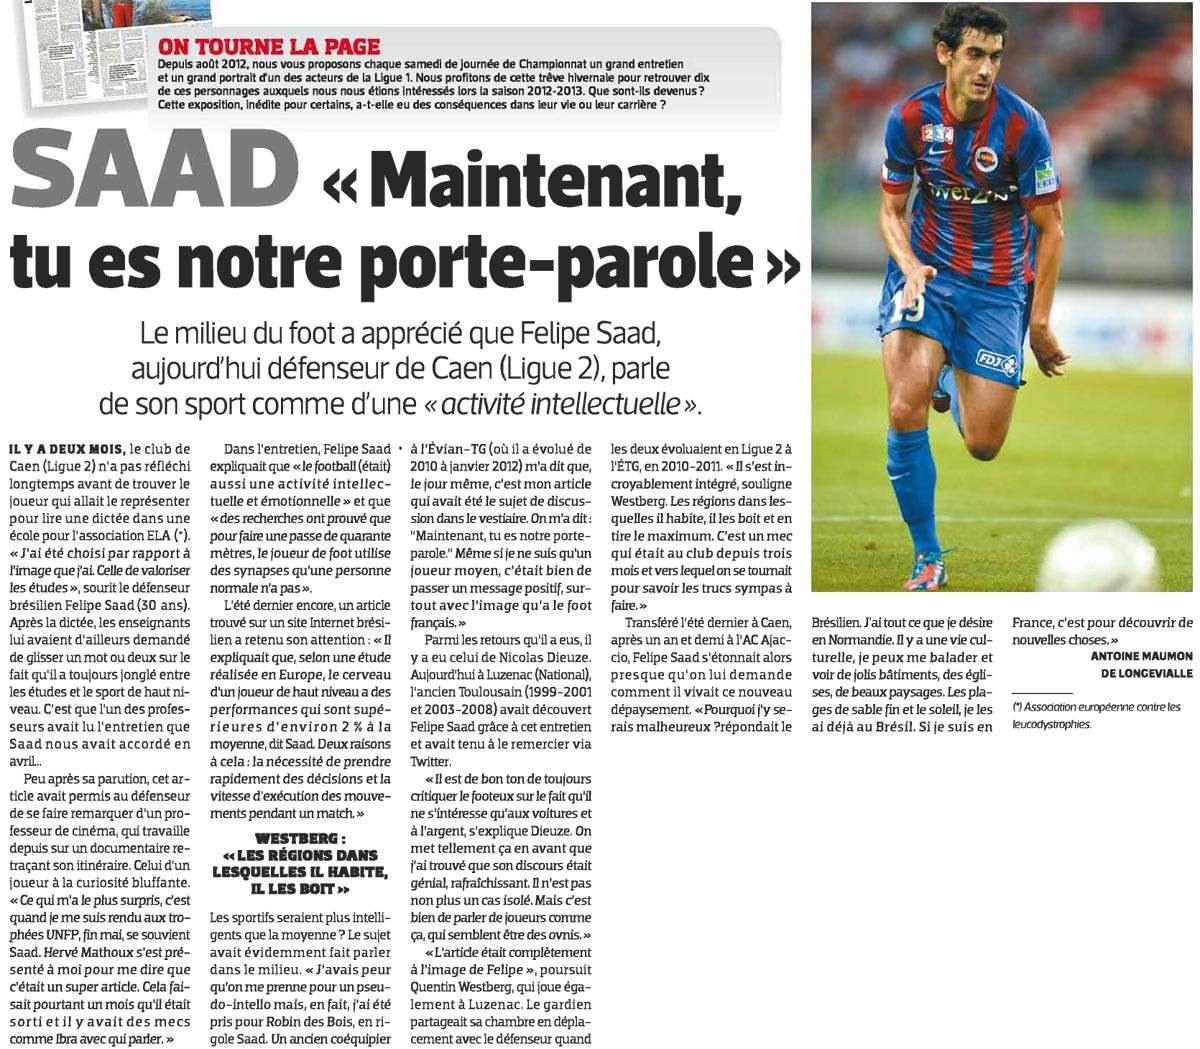 Revue de presse (2013-2014) Ligue 2 - Page 5 Saad10